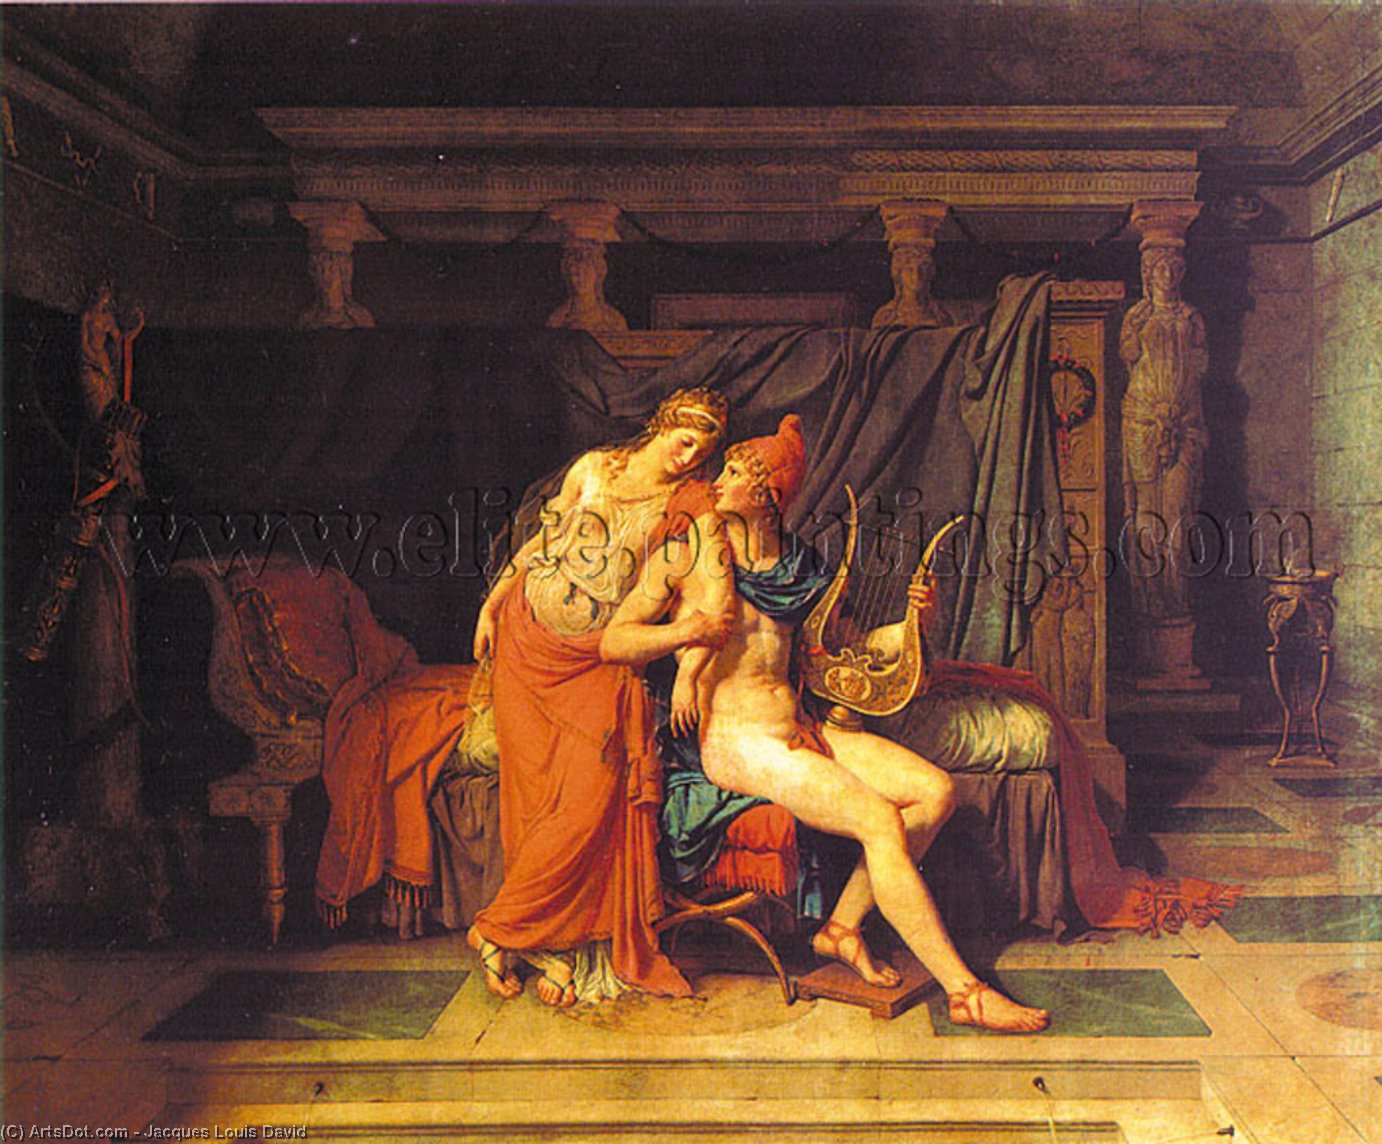 WikiOO.org - Encyclopedia of Fine Arts - Lukisan, Artwork Jacques Louis David - Paris and Helen, oil on canvas, Musée du L